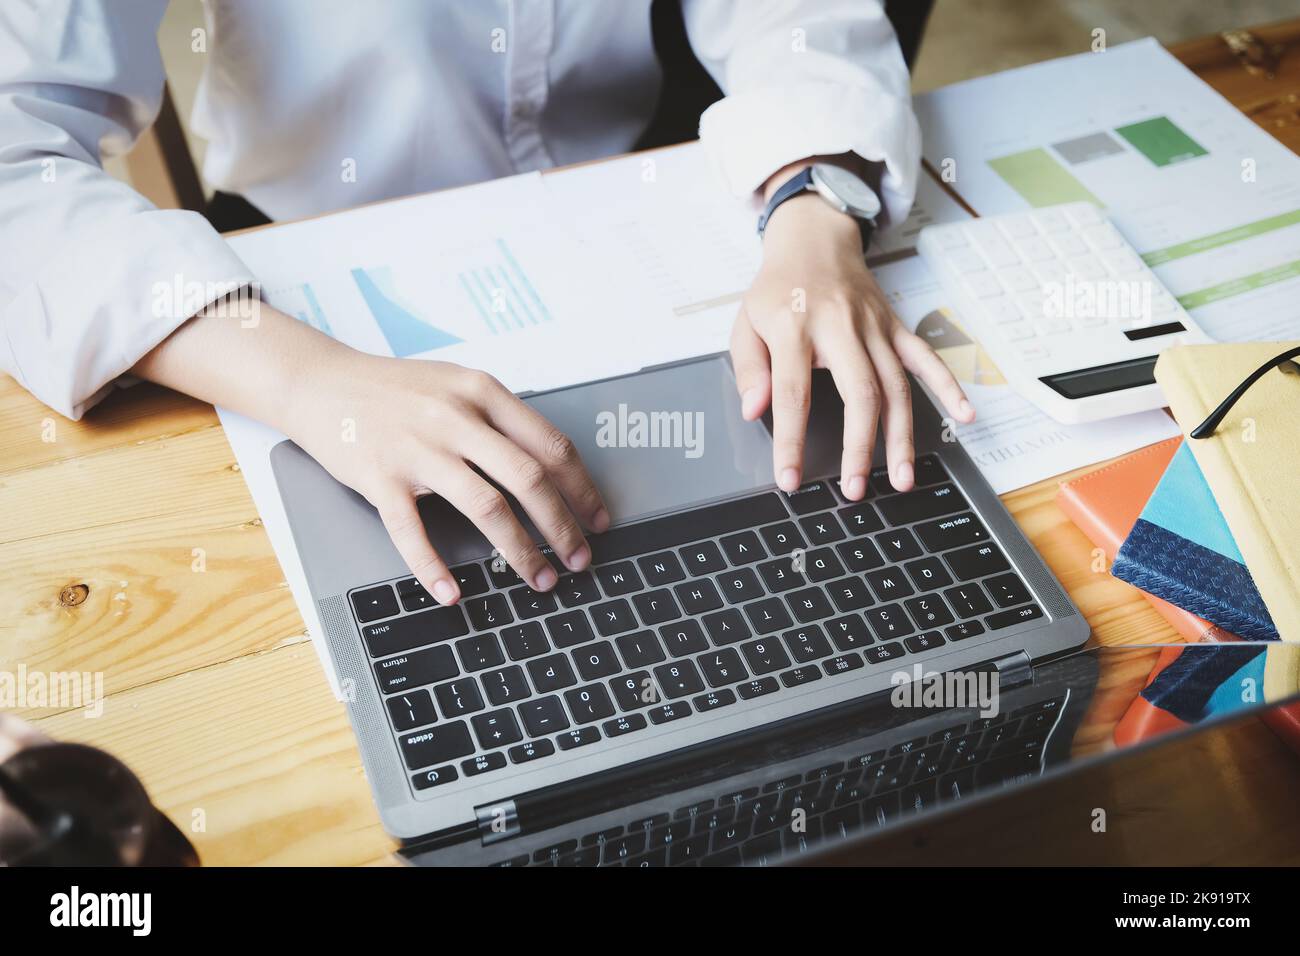 concetto freelance, donna che utilizza i computer per progettare il lavoro come ordinato dai clienti a casa. Foto Stock